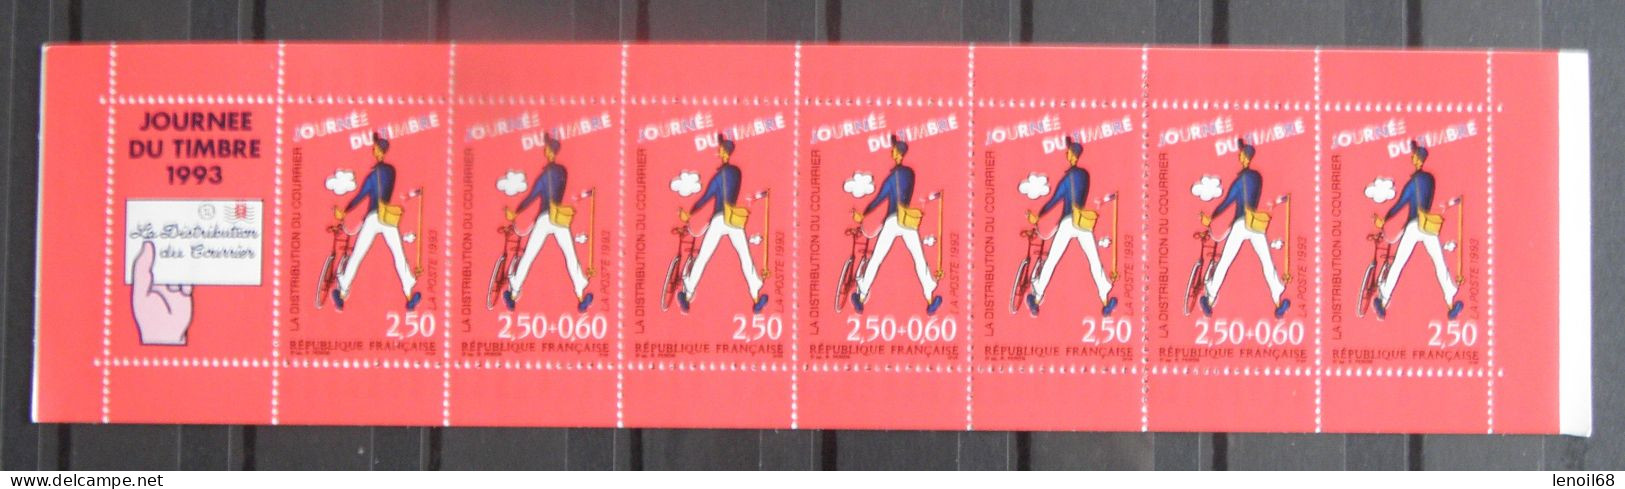 Carnet Journée Du Timbre 1993 N° BC2794 La Distributon Du Courrier (Jacques Tati) Neuf, Non Plié - Stamp Day